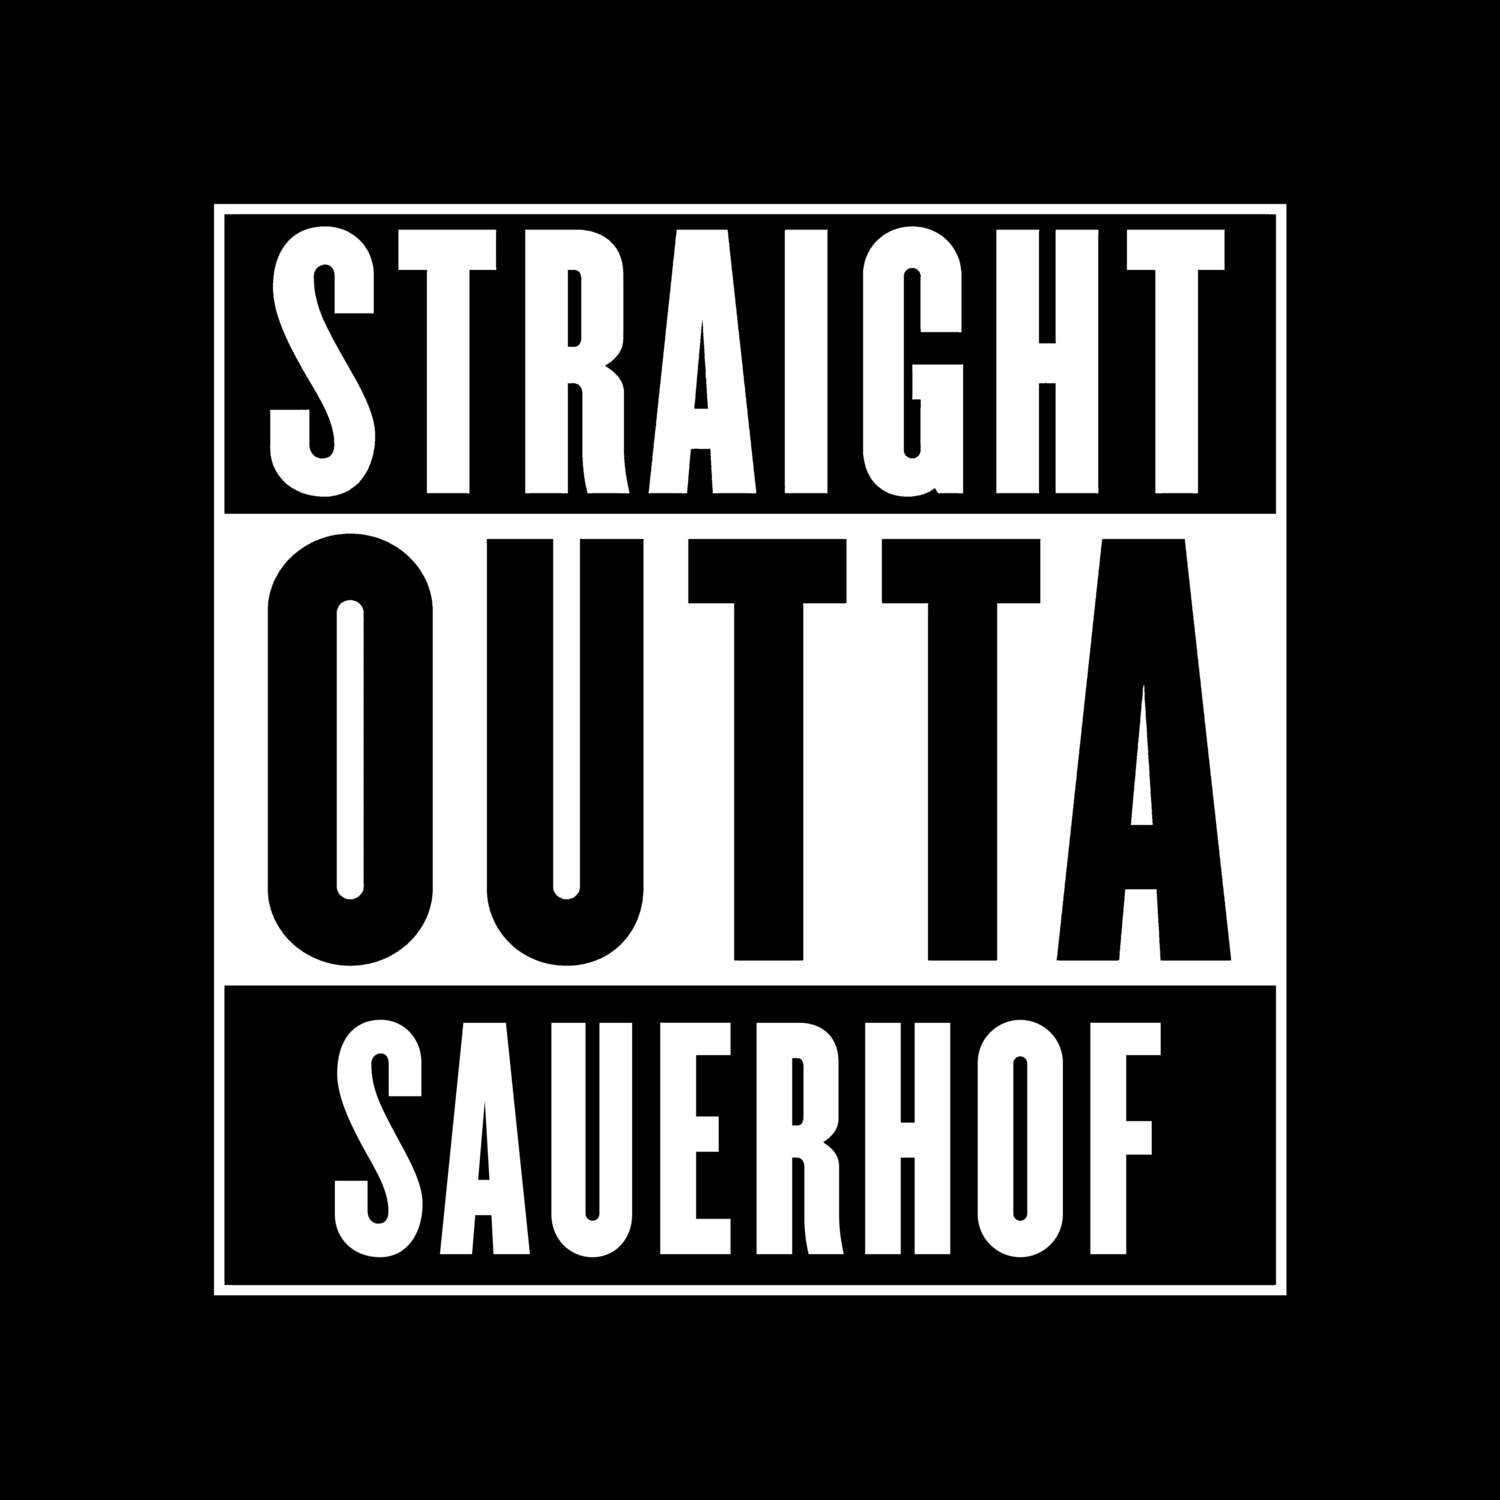 Sauerhof T-Shirt »Straight Outta«